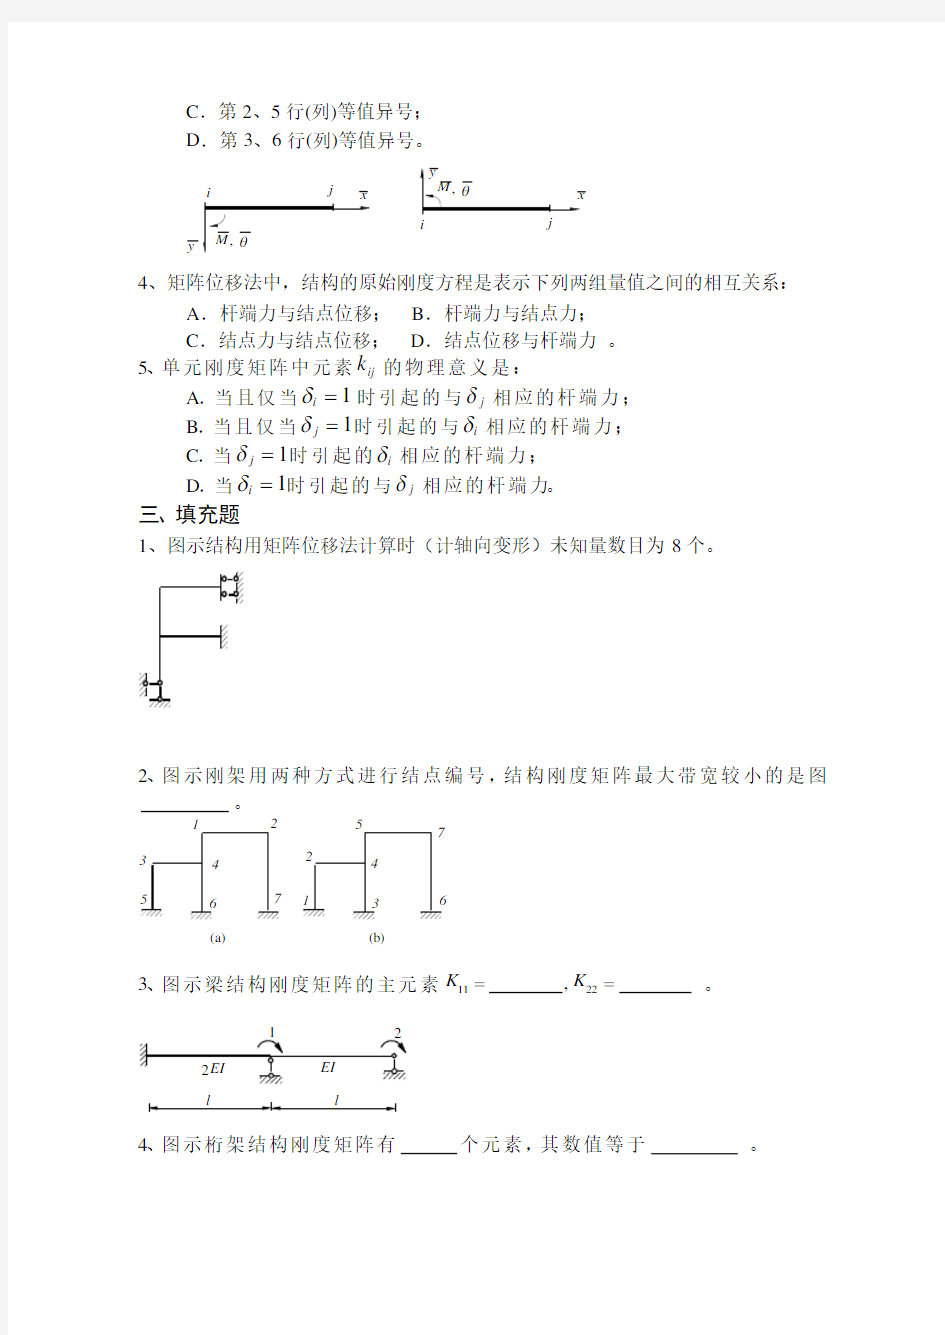 《结构力学习题集》(下)-矩阵位移法习题及问题详解 (2)